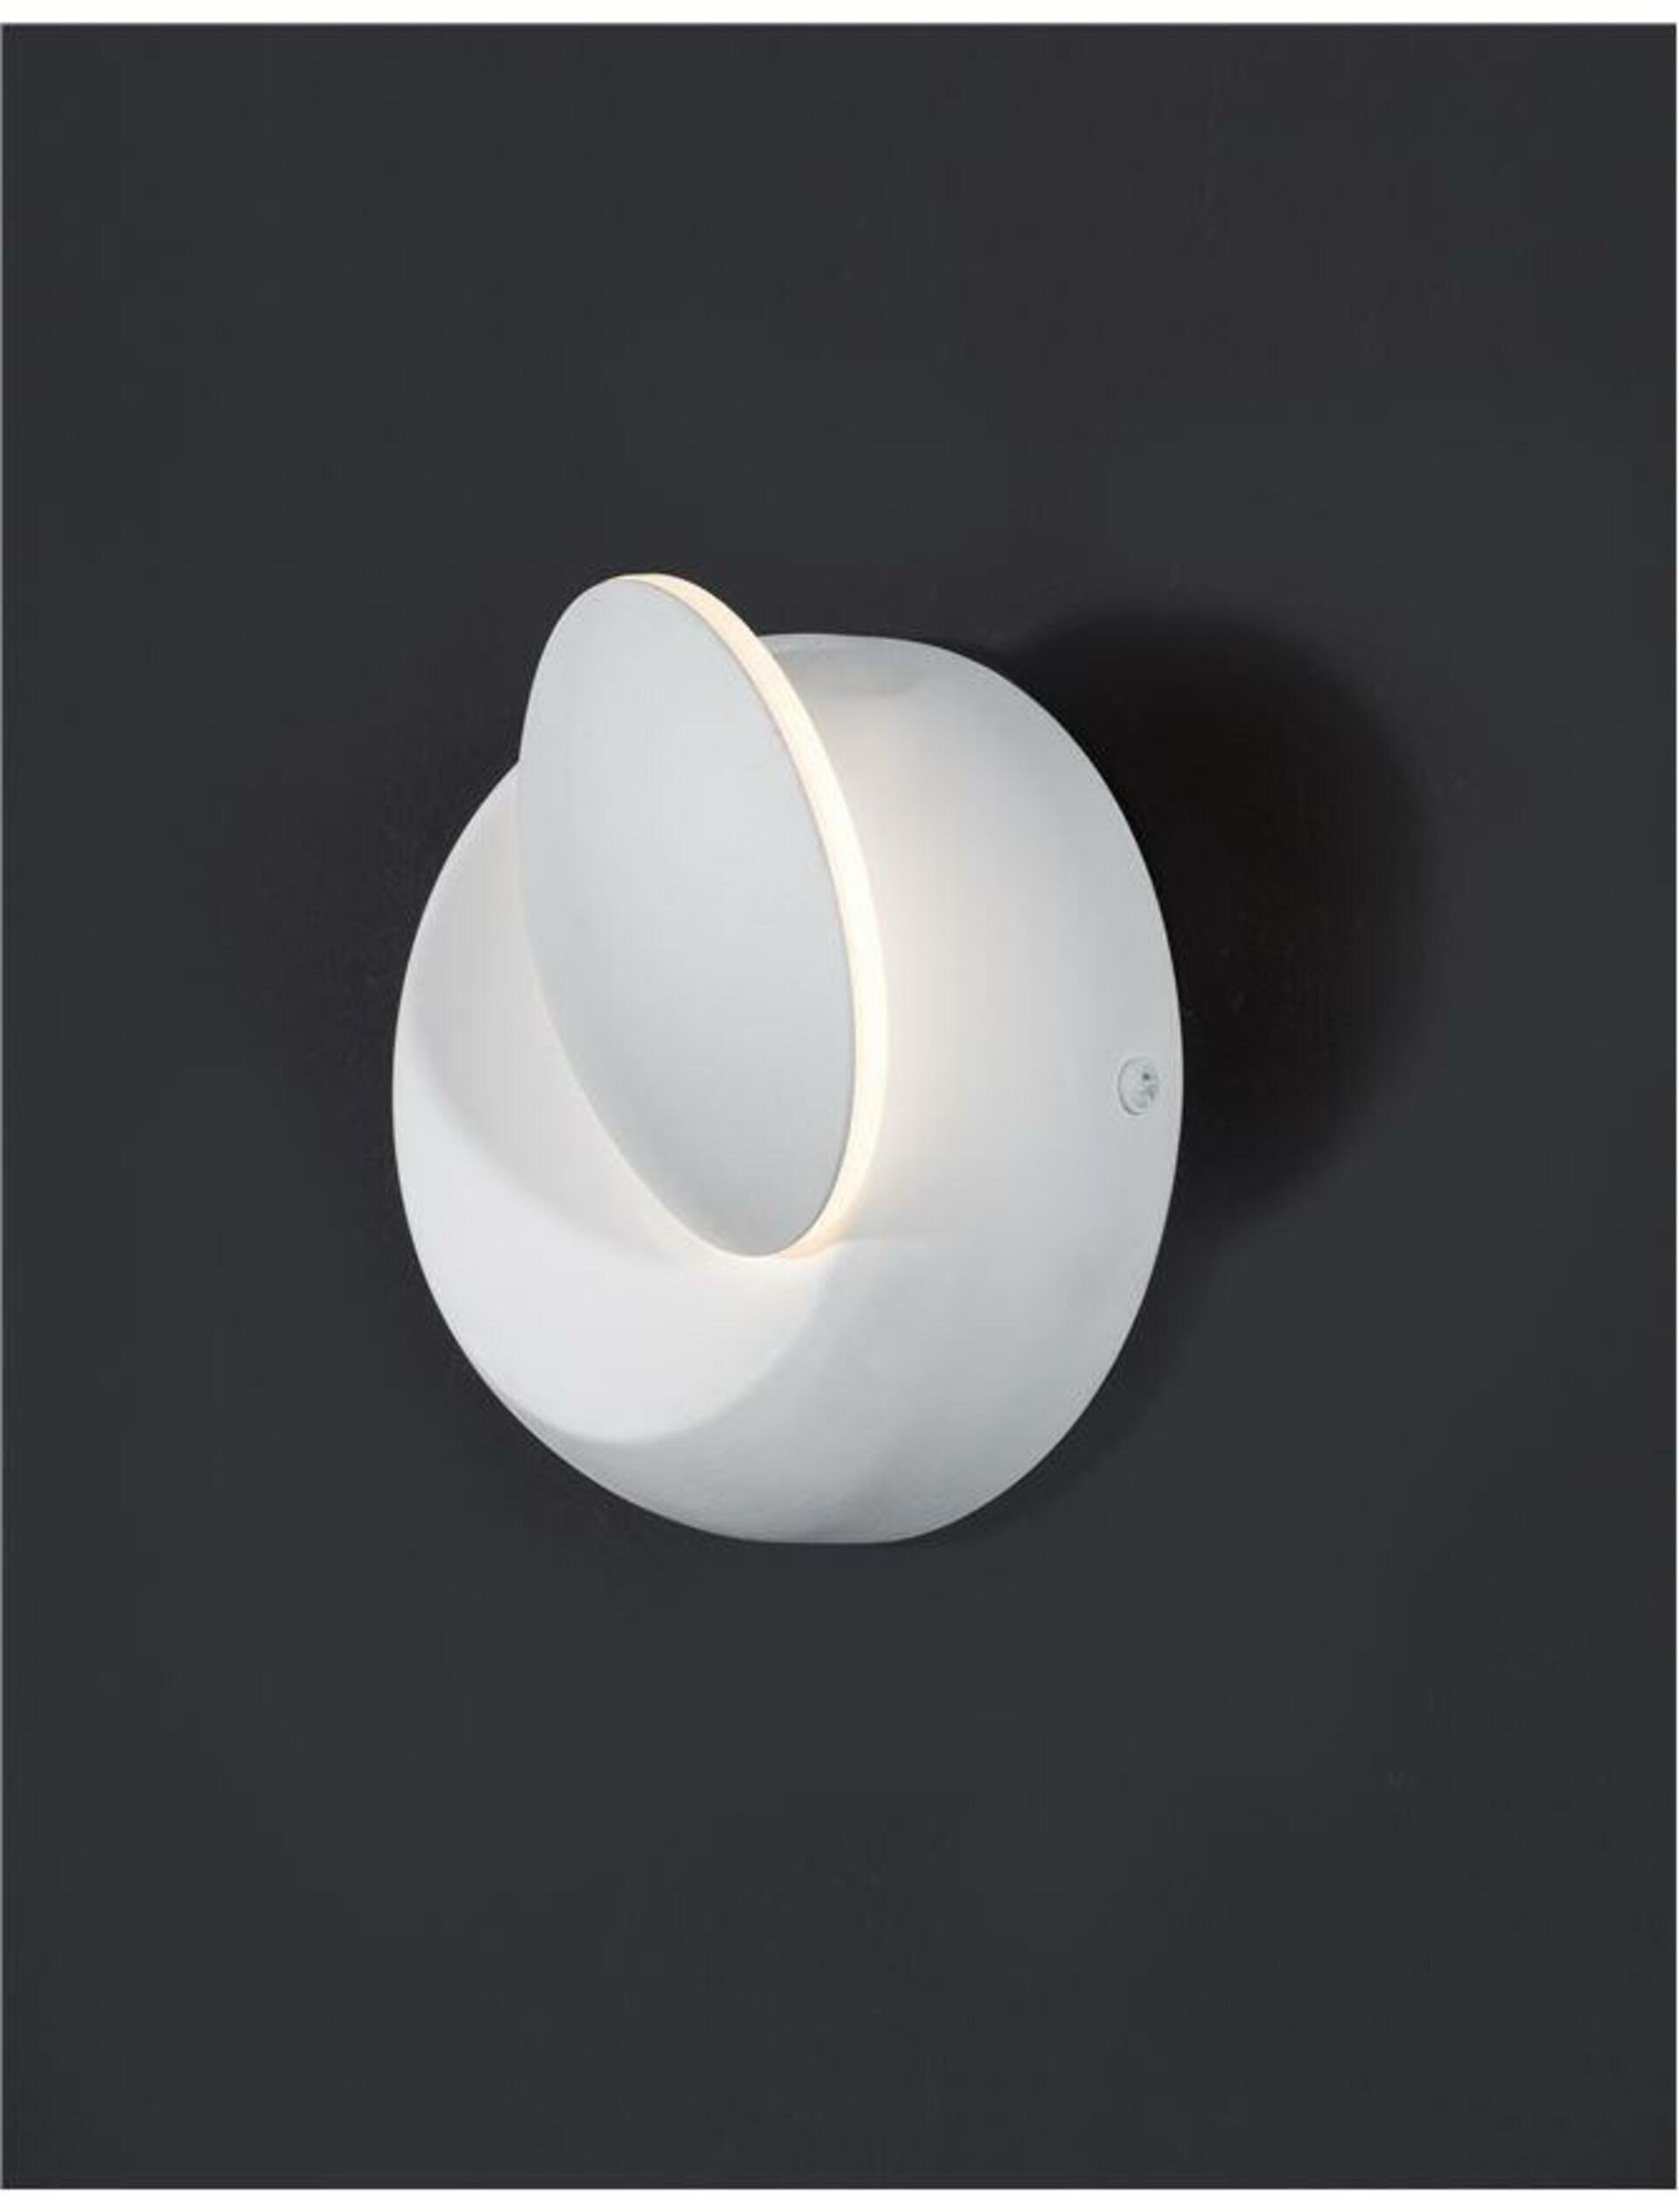 Nova Luce Kovové nástěnné LED svítidlo Odin s možností vyklopení - pr. 140 x 70 mm, 5 W, bílá NV 910161